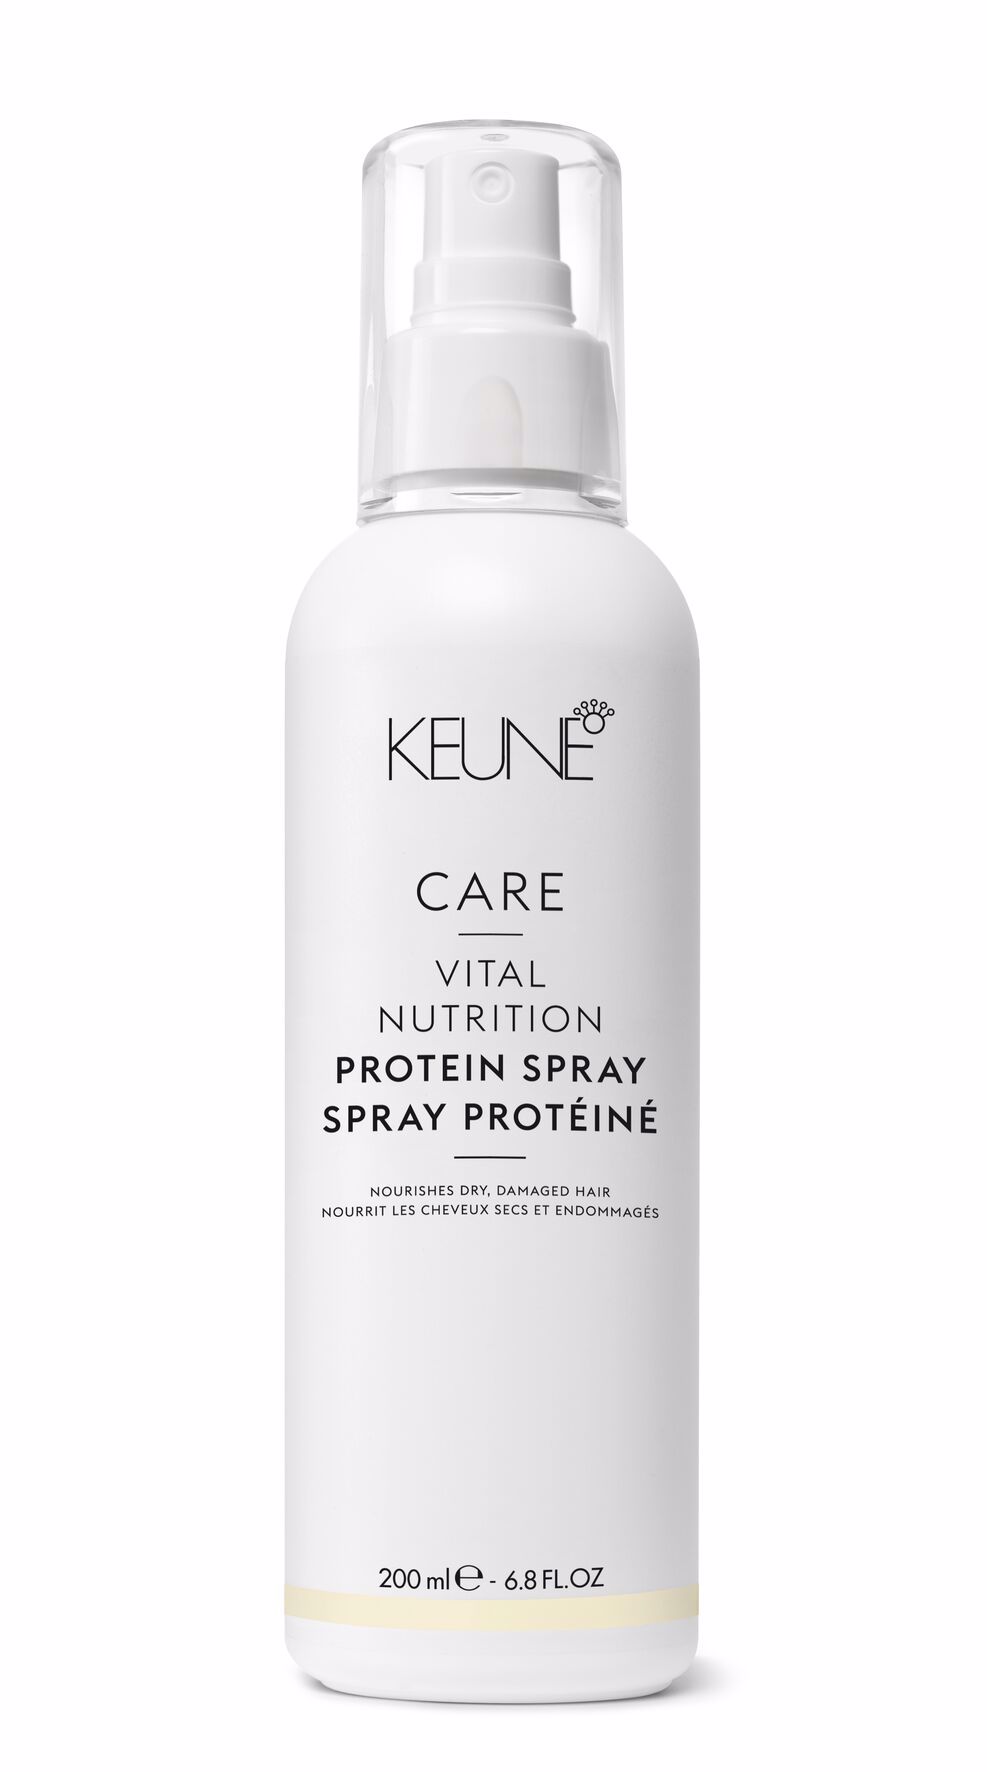 CARE VITAL NUTRITION PROTEIN SPRAY: Produit de soin capillaire pour les cheveux secs, poreux et abîmés. Facilite le coiffage. Sur keune.ch.